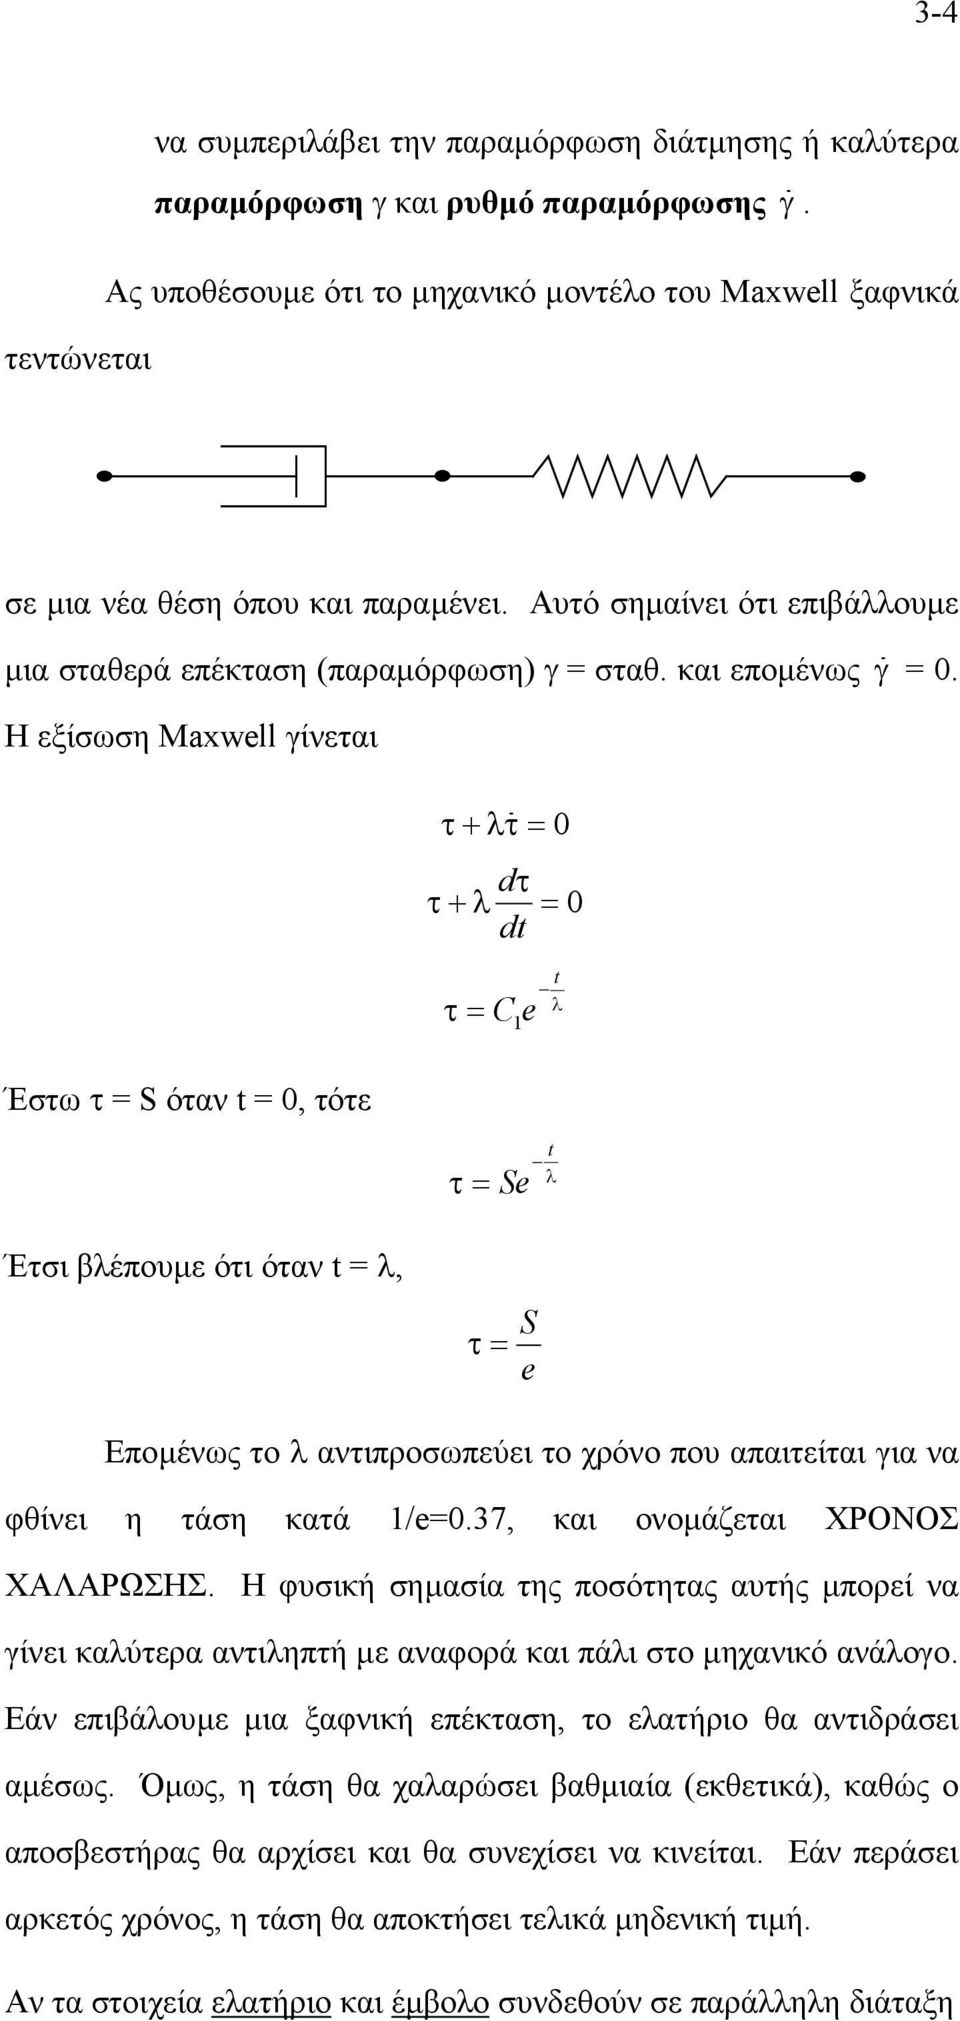 Η εξίσωση Maxwell γίνεται Έστω τ = S όταν t = 0, τότε Έτσι βλέπουµε ότι όταν t = λ, τ + λτ = 0 d τ+ λ τ = 0 dt t λ 1 τ = Ce τ = Se t λ τ= S e Εποµένως το λ αντιπροσωπεύει το χρόνο που απαιτείται για